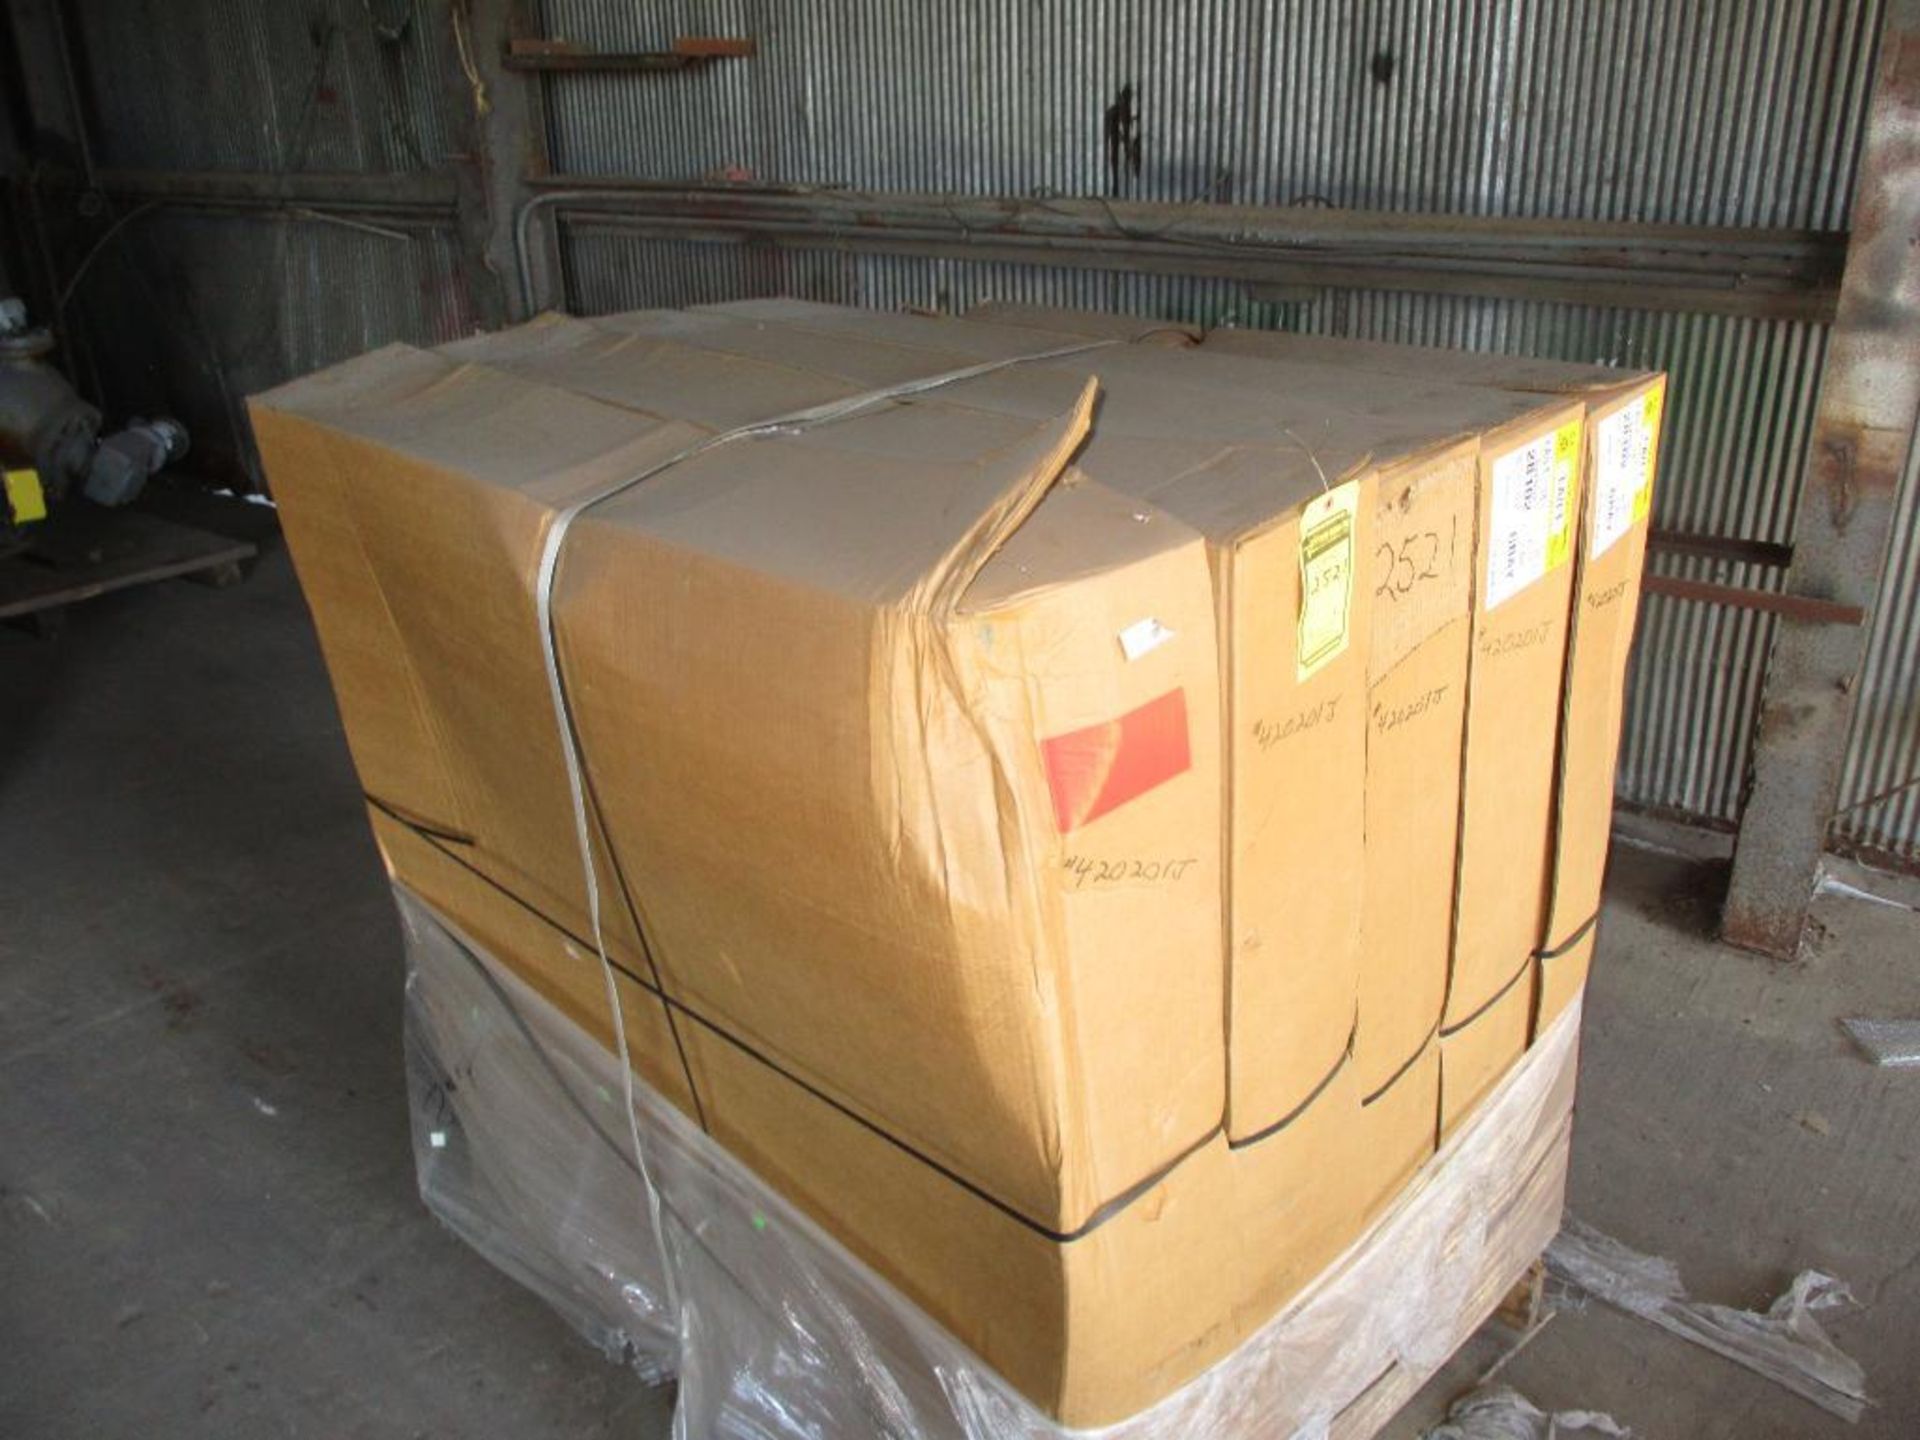 (5) Boxes of Liquatite 3" Flexible Metal Conduit, Gray, 25', Cat No. LA/LT-18 (New) - Image 4 of 4